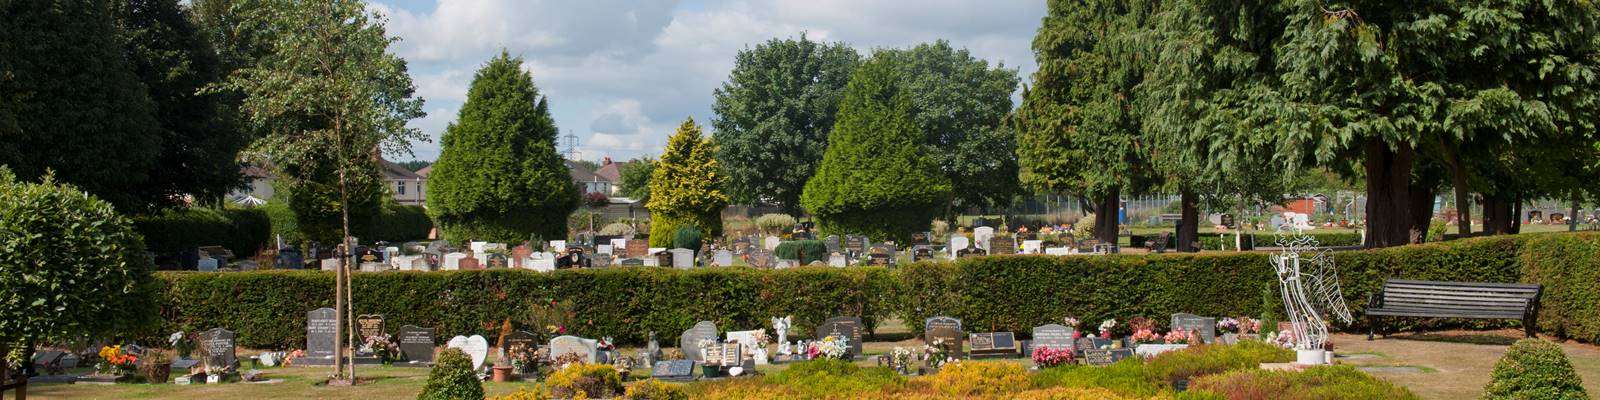 Eastleigh_Brookwood_Cemetery17.jpg